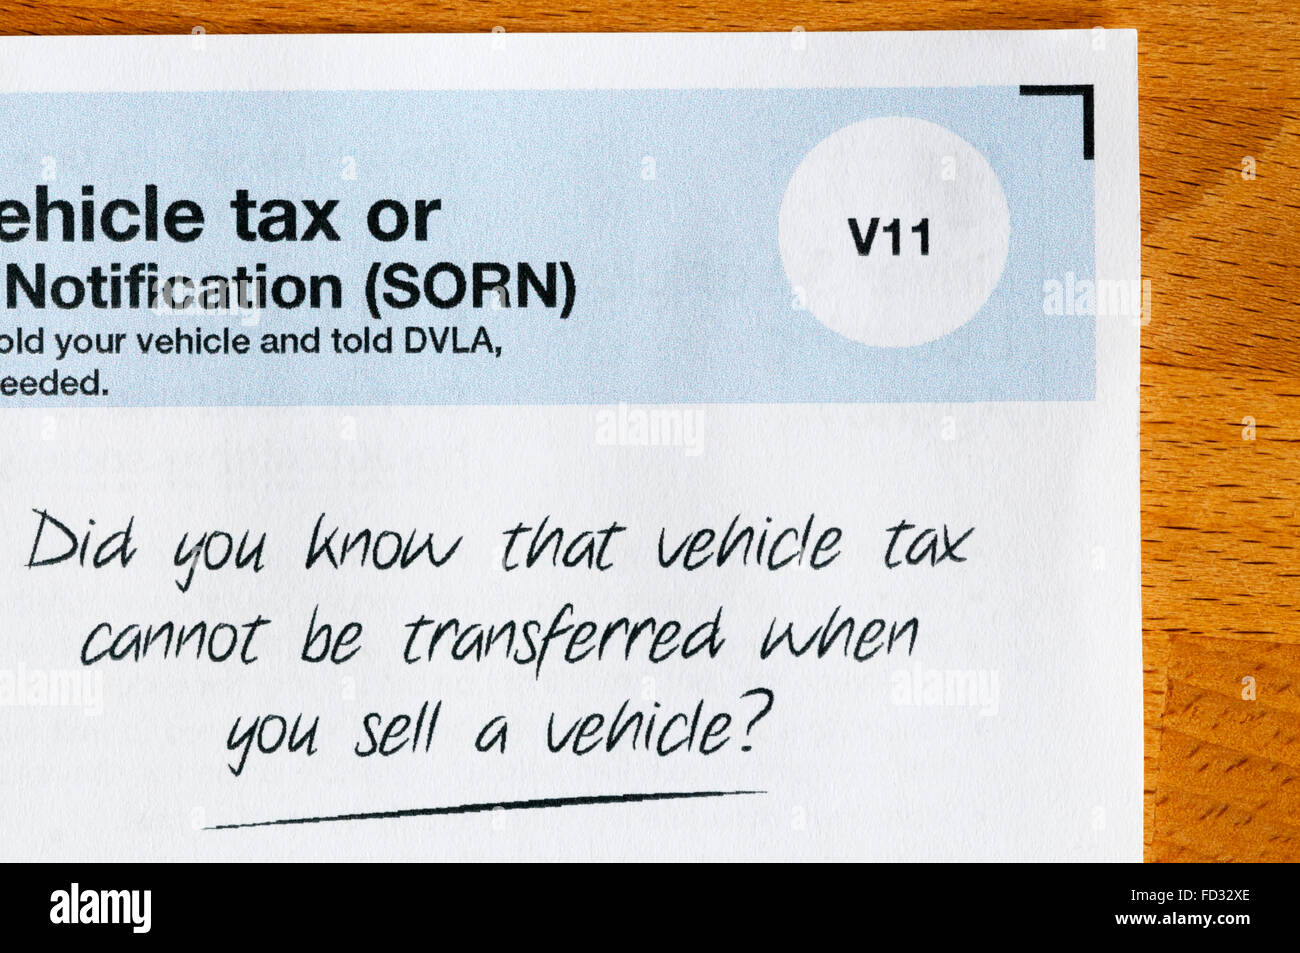 Un rappel de la DVLA Taxe sur les véhicules qui ne peuvent pas être transférées lorsqu'un véhicule est vendu. Banque D'Images